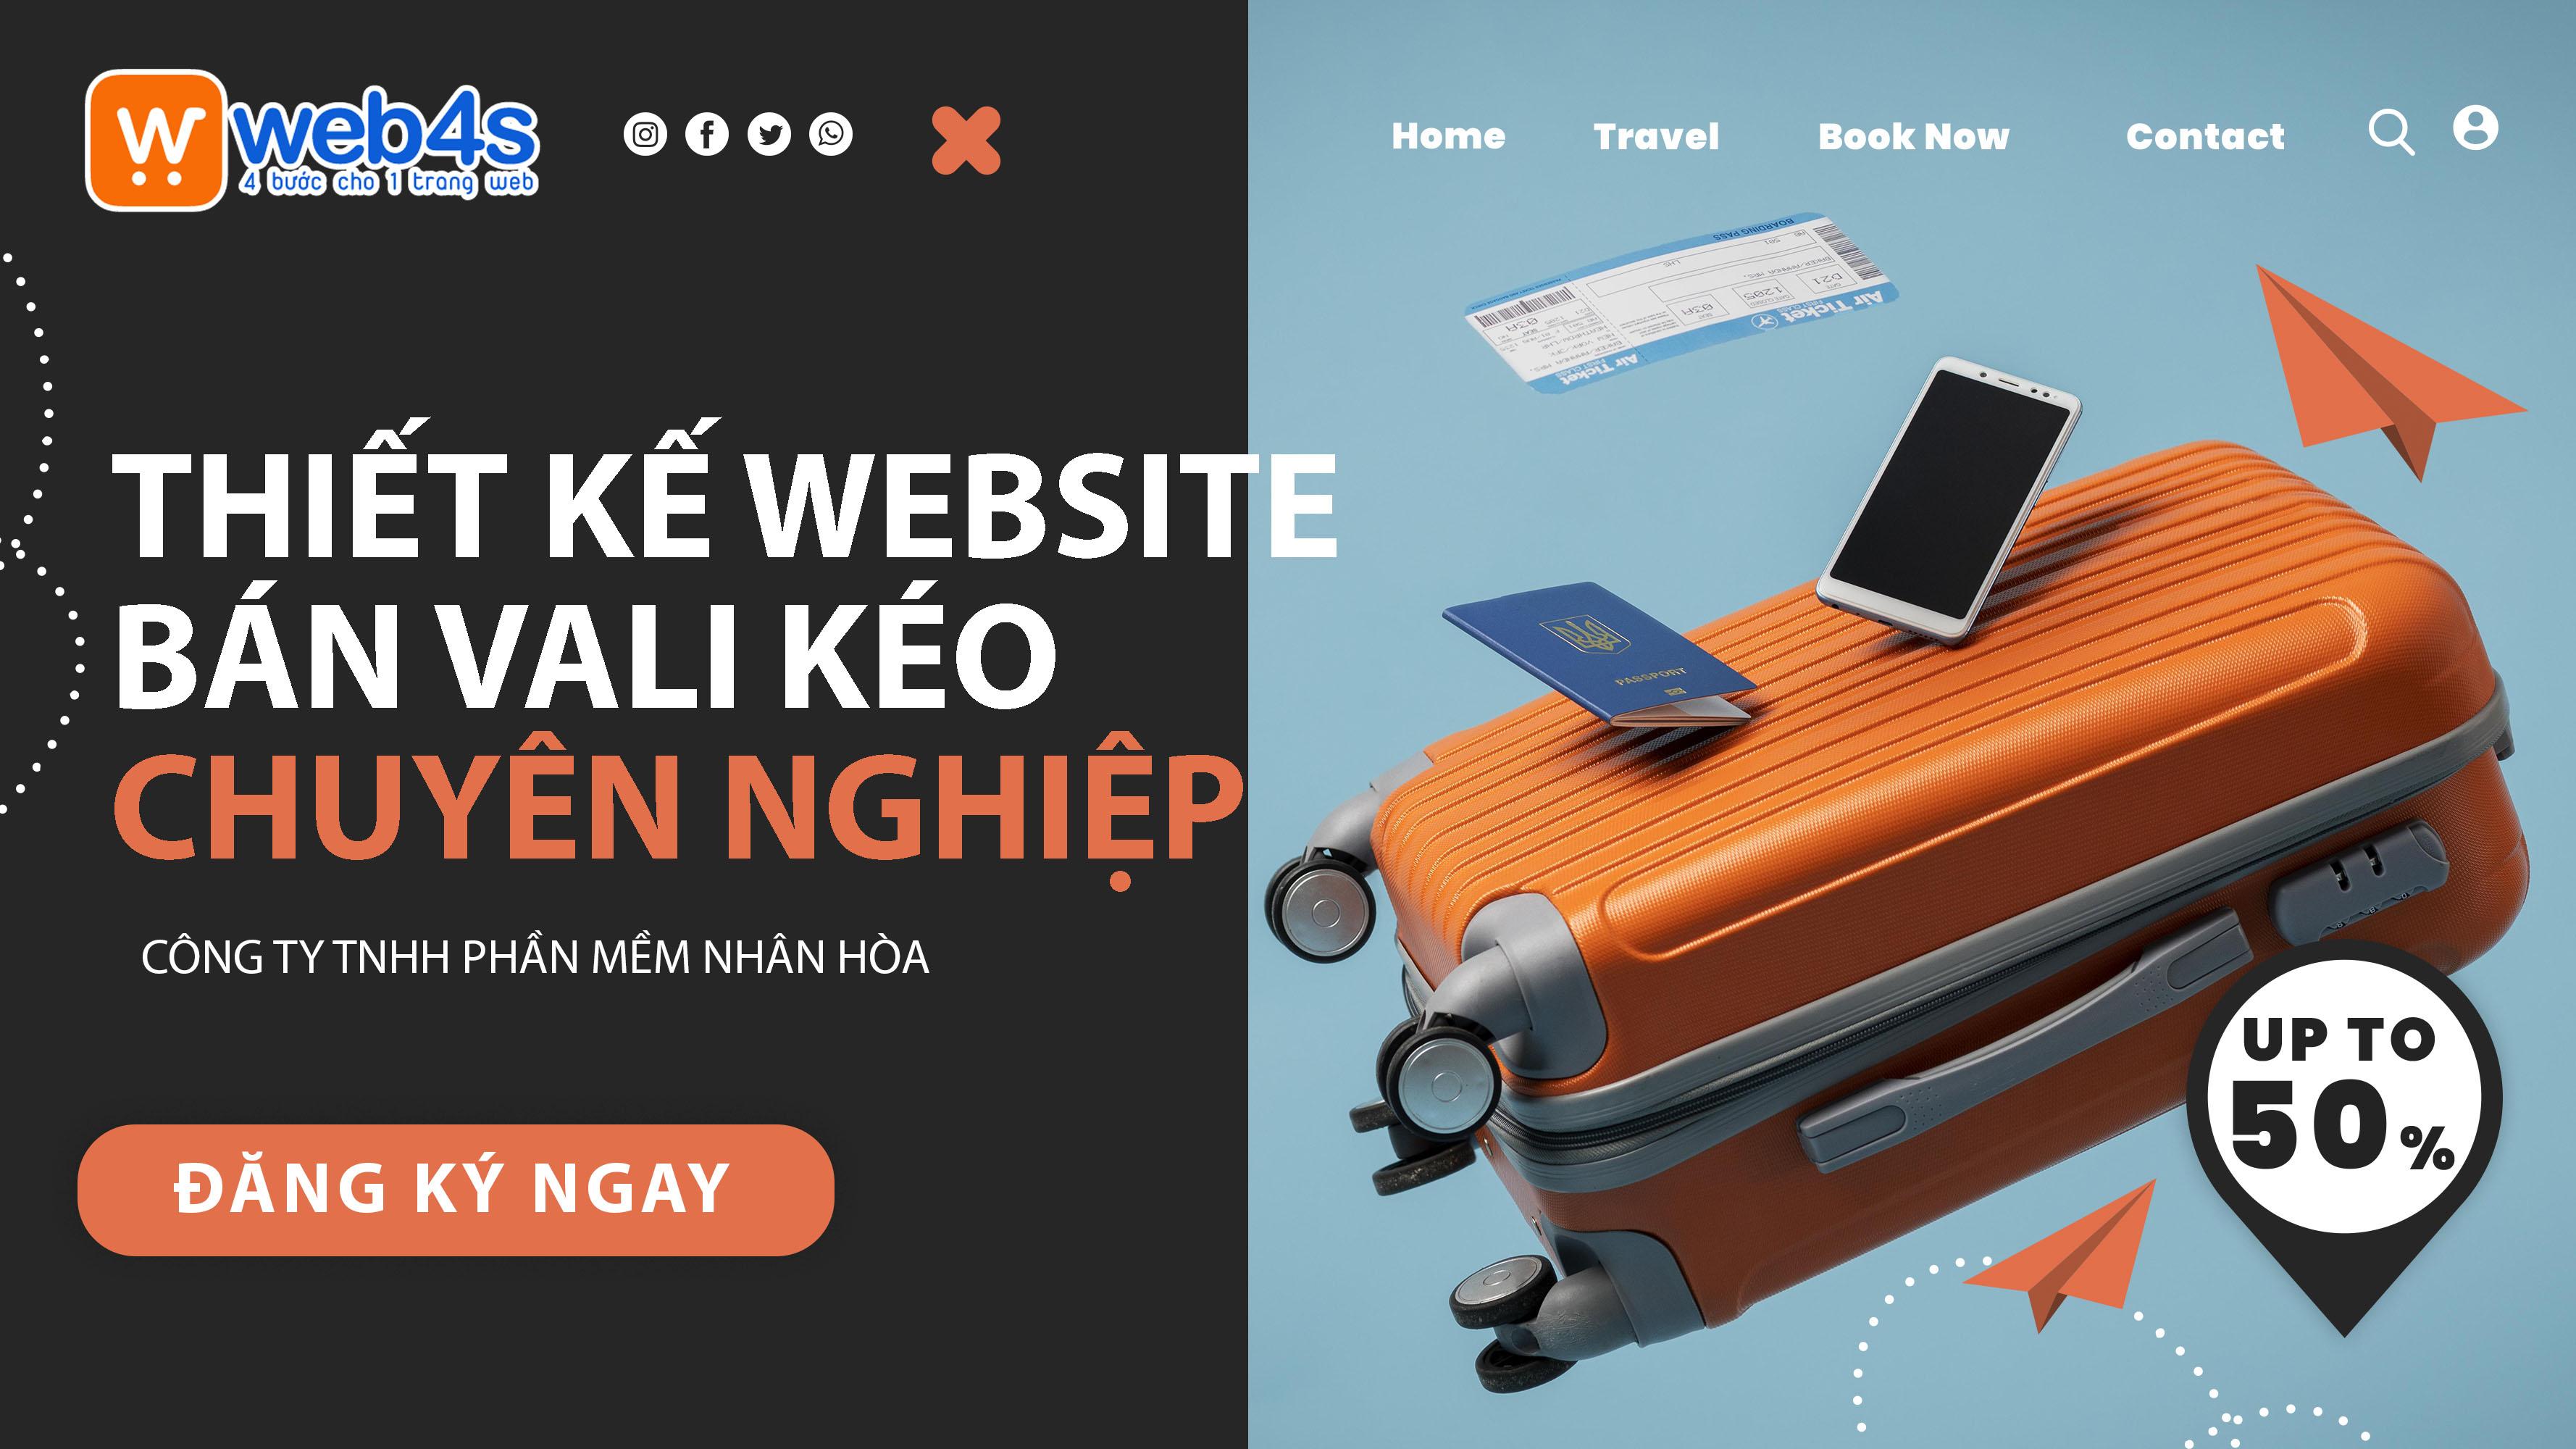 Dịch vụ thiết kế website bán vali kéo Chuyên nghiệp thu hút